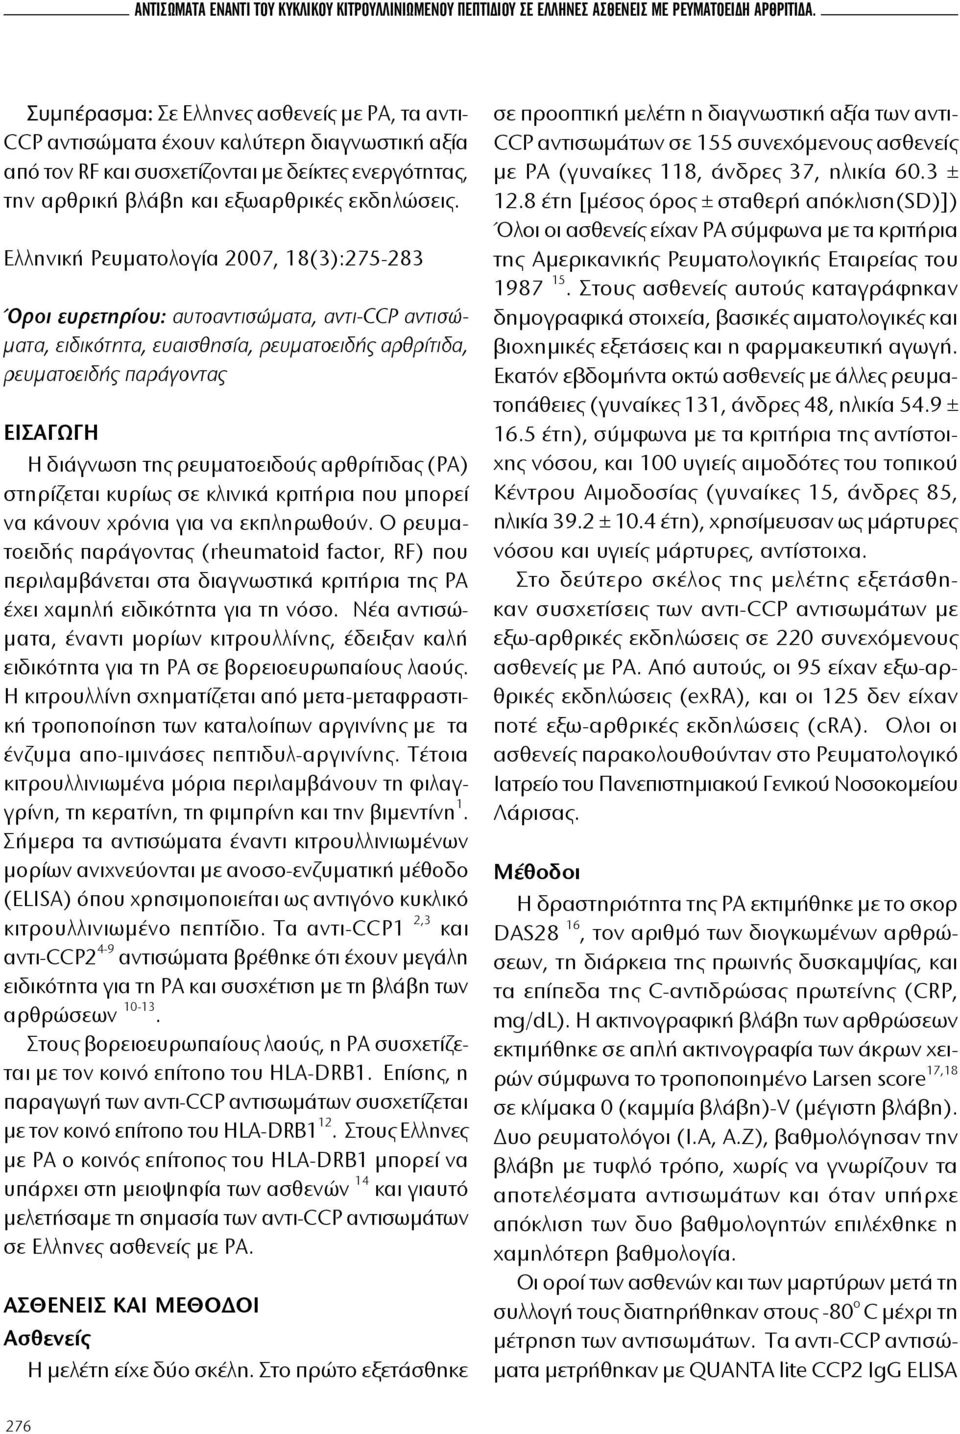 Ελληνική Ρευματολογία 2007, 18(3):275-283 Όροι ευρετηρίου: αυτοαντισώματα, αντι-ccp αντισώματα, ειδικότητα, ευαισθησία, ρευματοειδής αρθρίτιδα, ρευματοειδής παράγοντας ΕΙΣΑΓΩΓΗ Η διάγνωση της